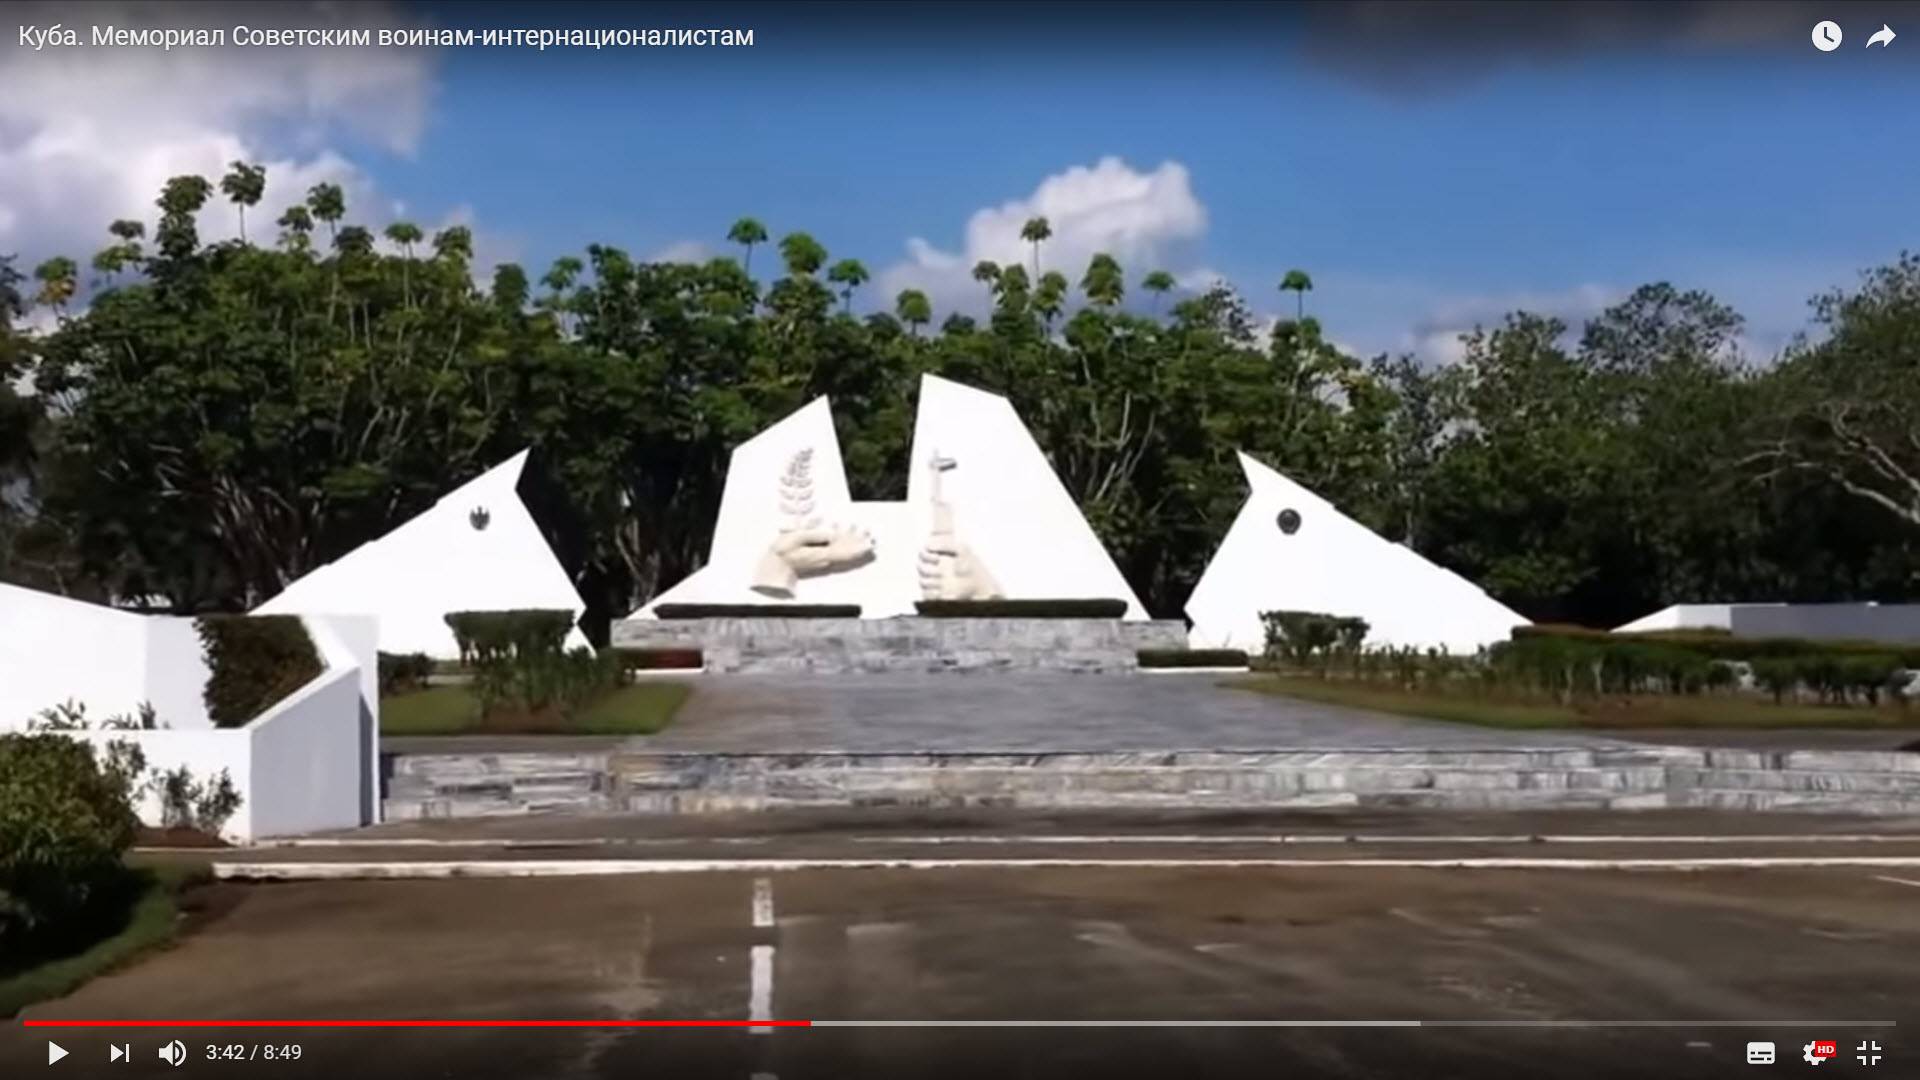 Мемориал советского война-интернационалиста на Кубе